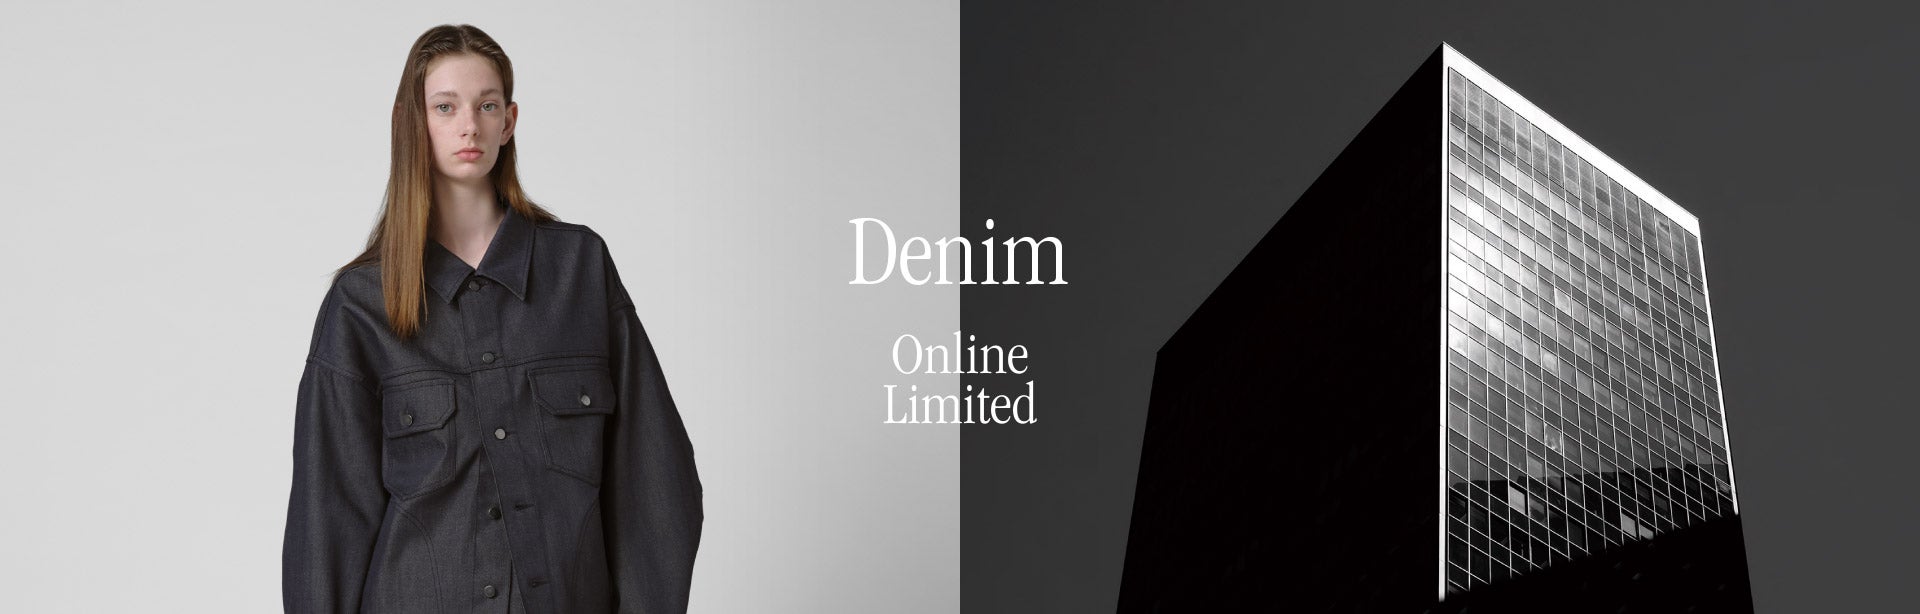 Denim. Online Limited